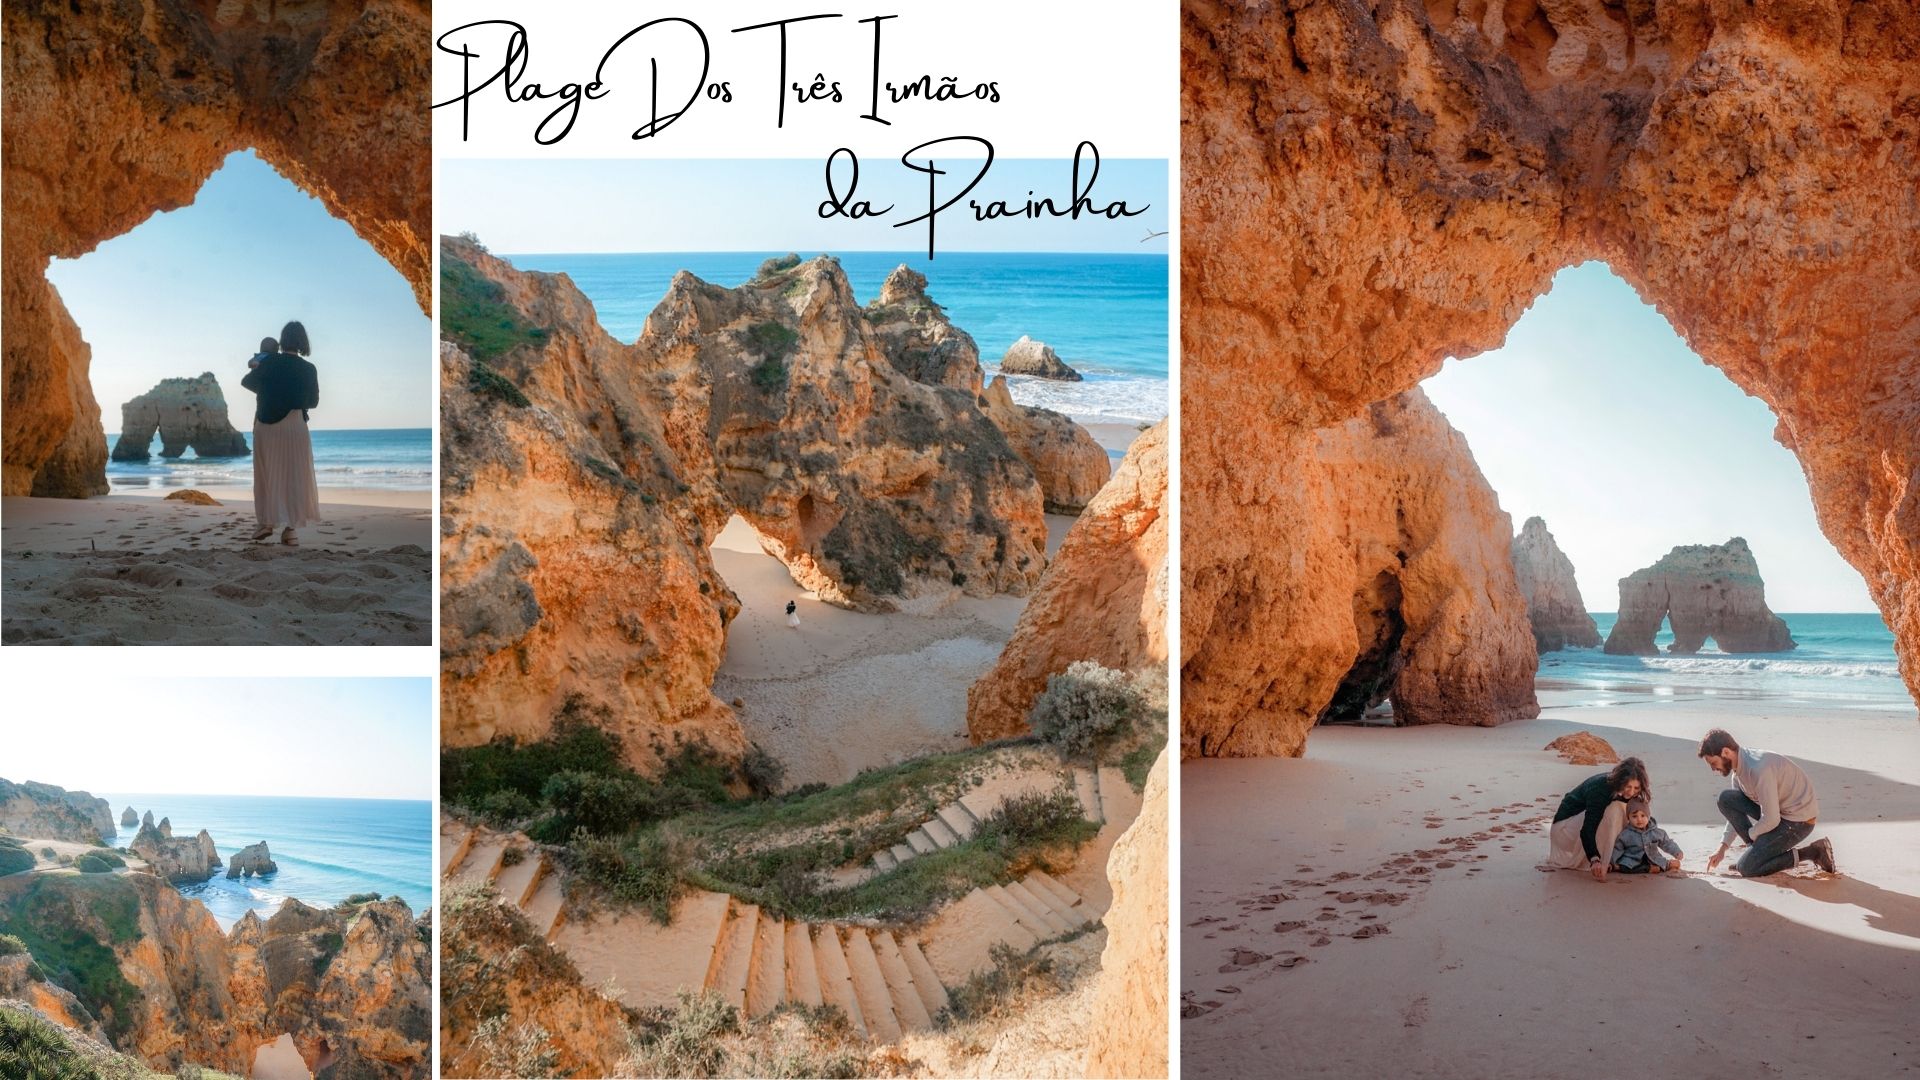 Top 5 des plus belles plages d'Algarve : plage Dos Três Irmaos